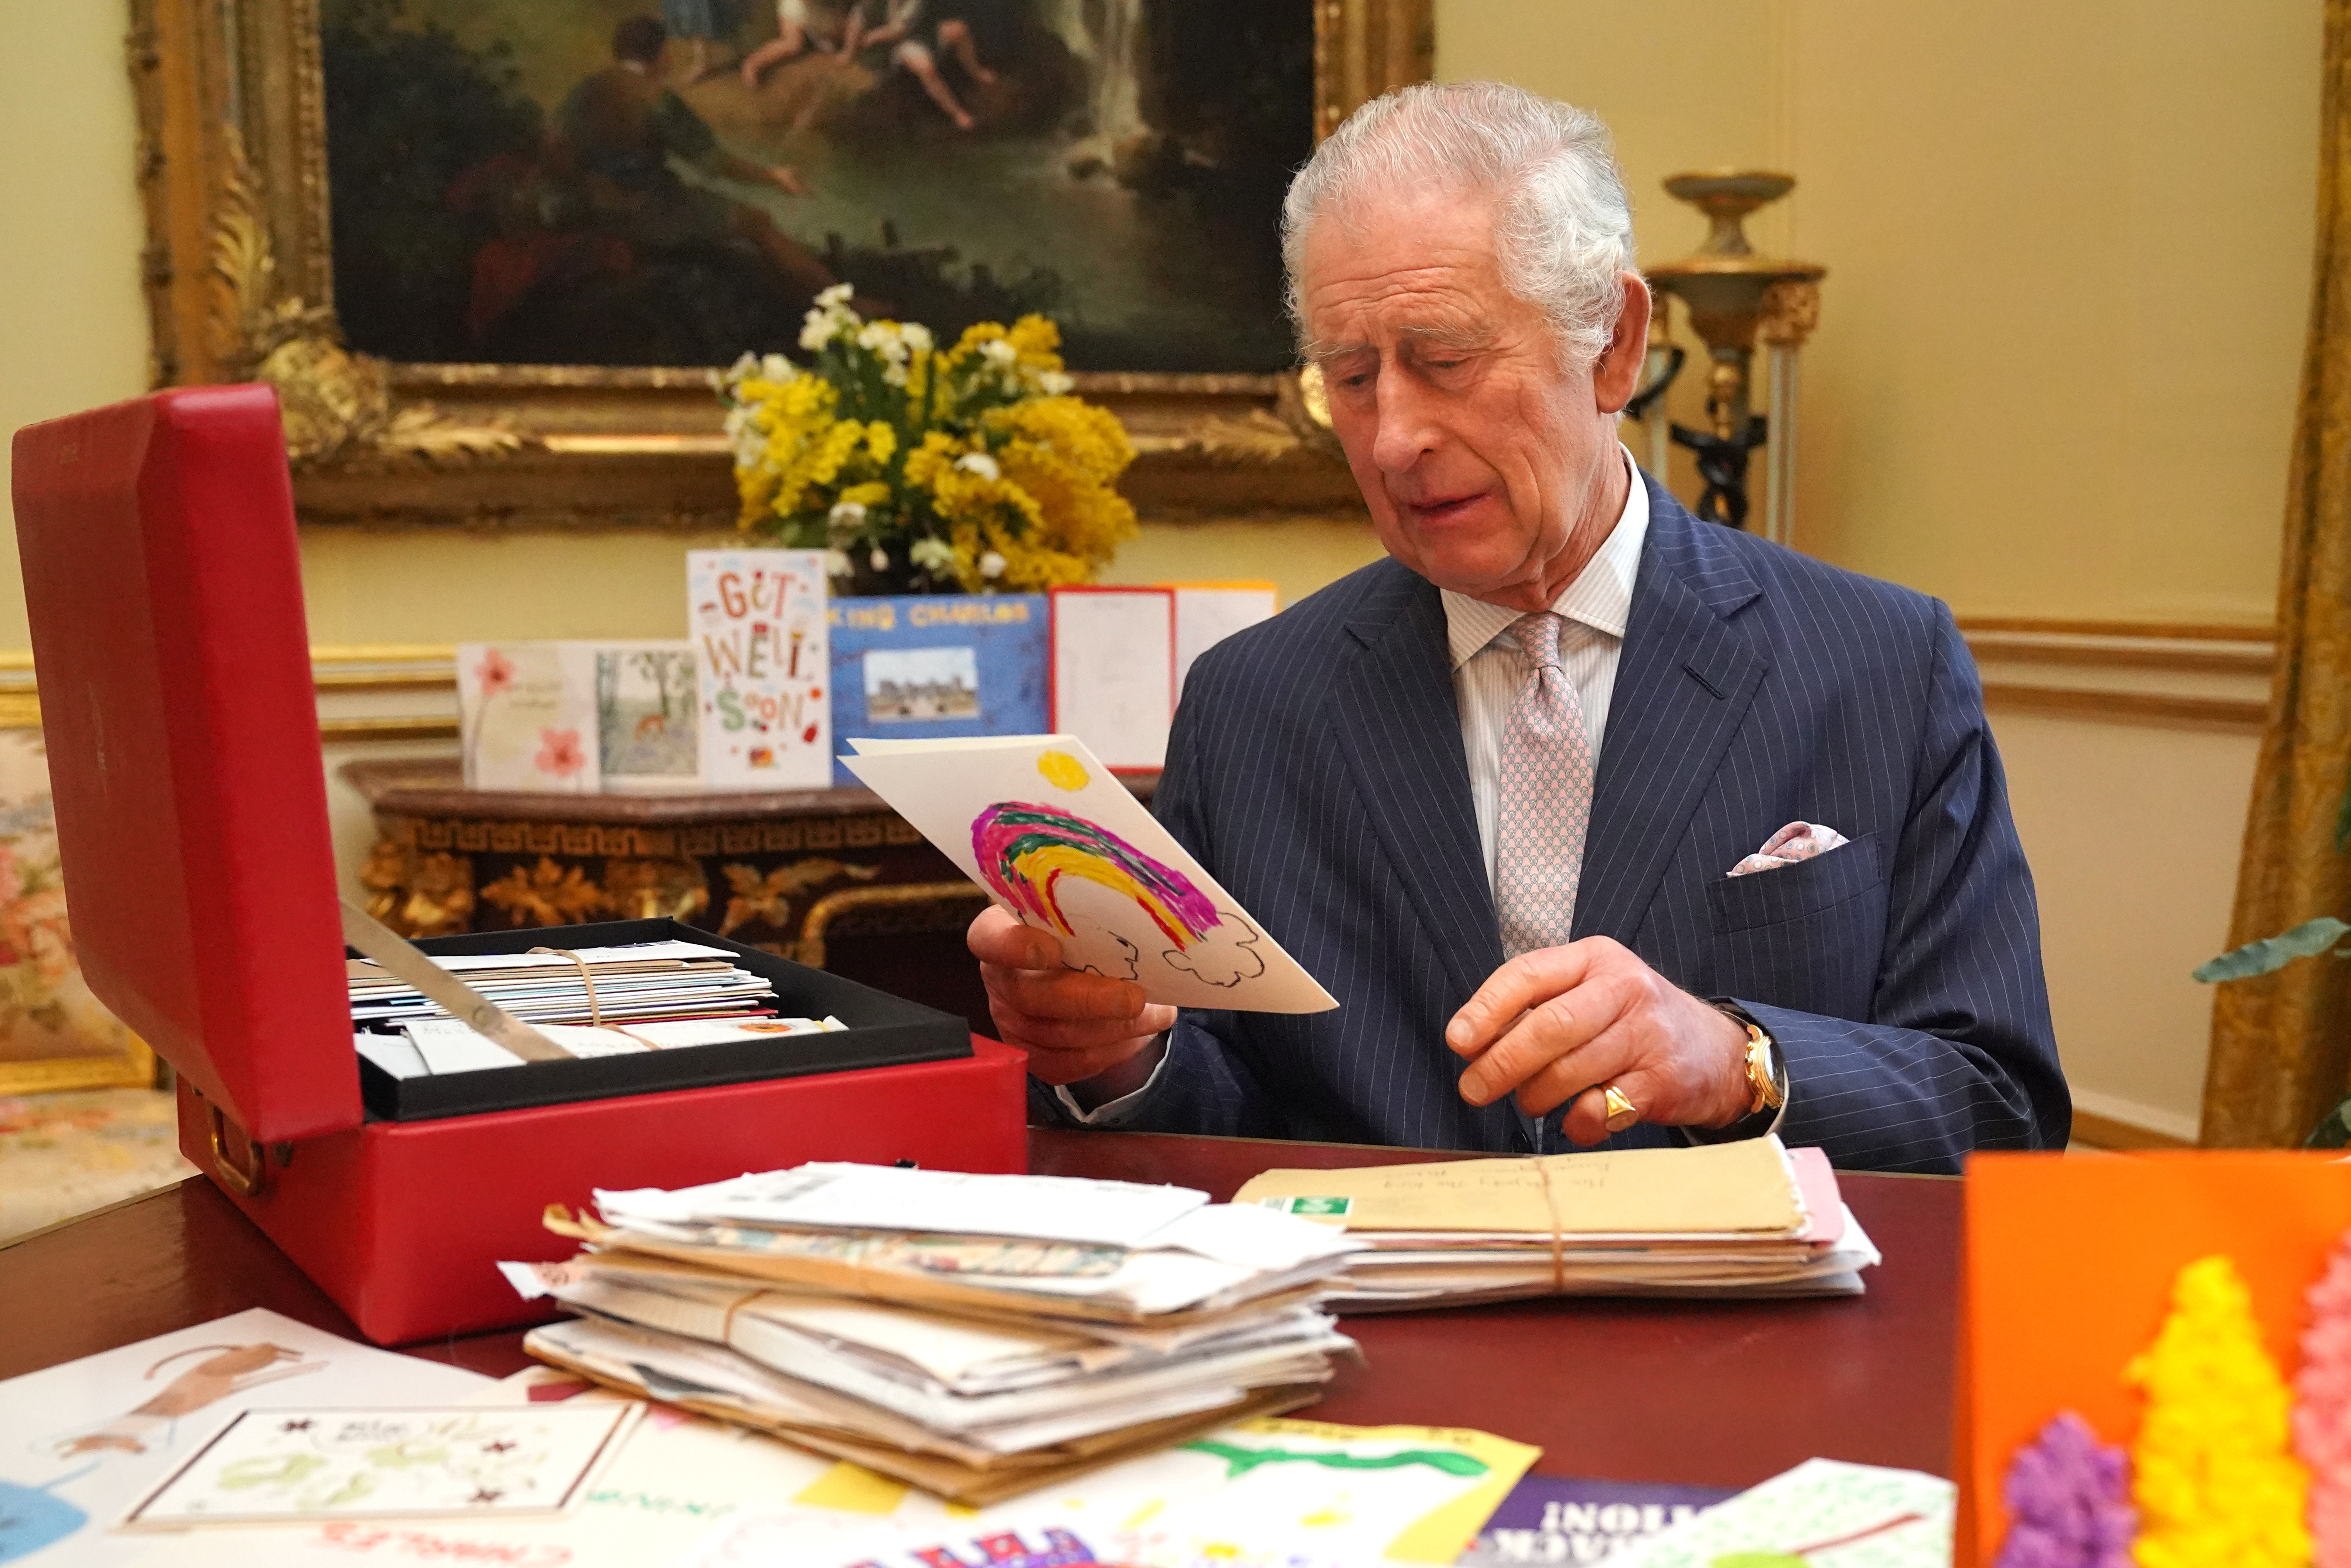 Le roi Charles lisant des cartes envoyées par des bienfaiteurs suite à son diagnostic de cancer, dans la salle du 18e siècle de la suite belge du palais de Buckingham, le 21 février 2024 à Londres, Angleterre | Source : Getty Images